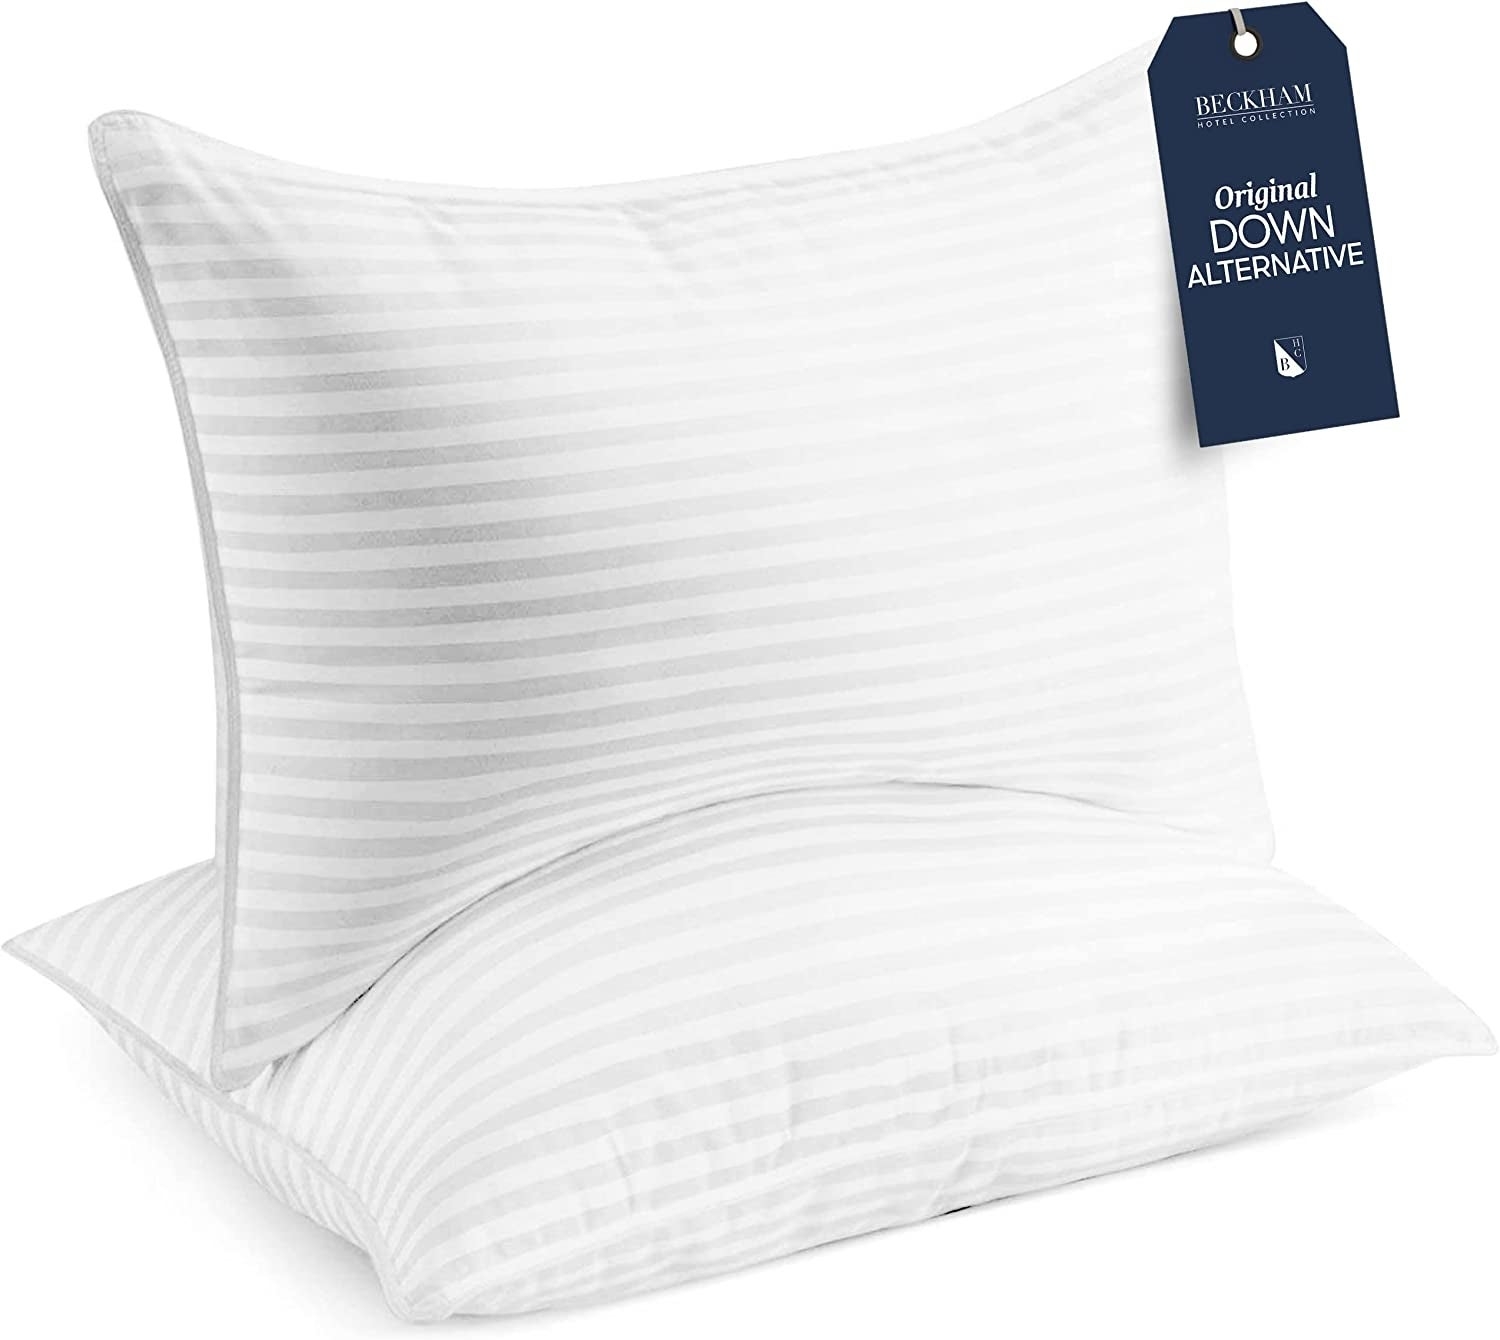 two white pillows